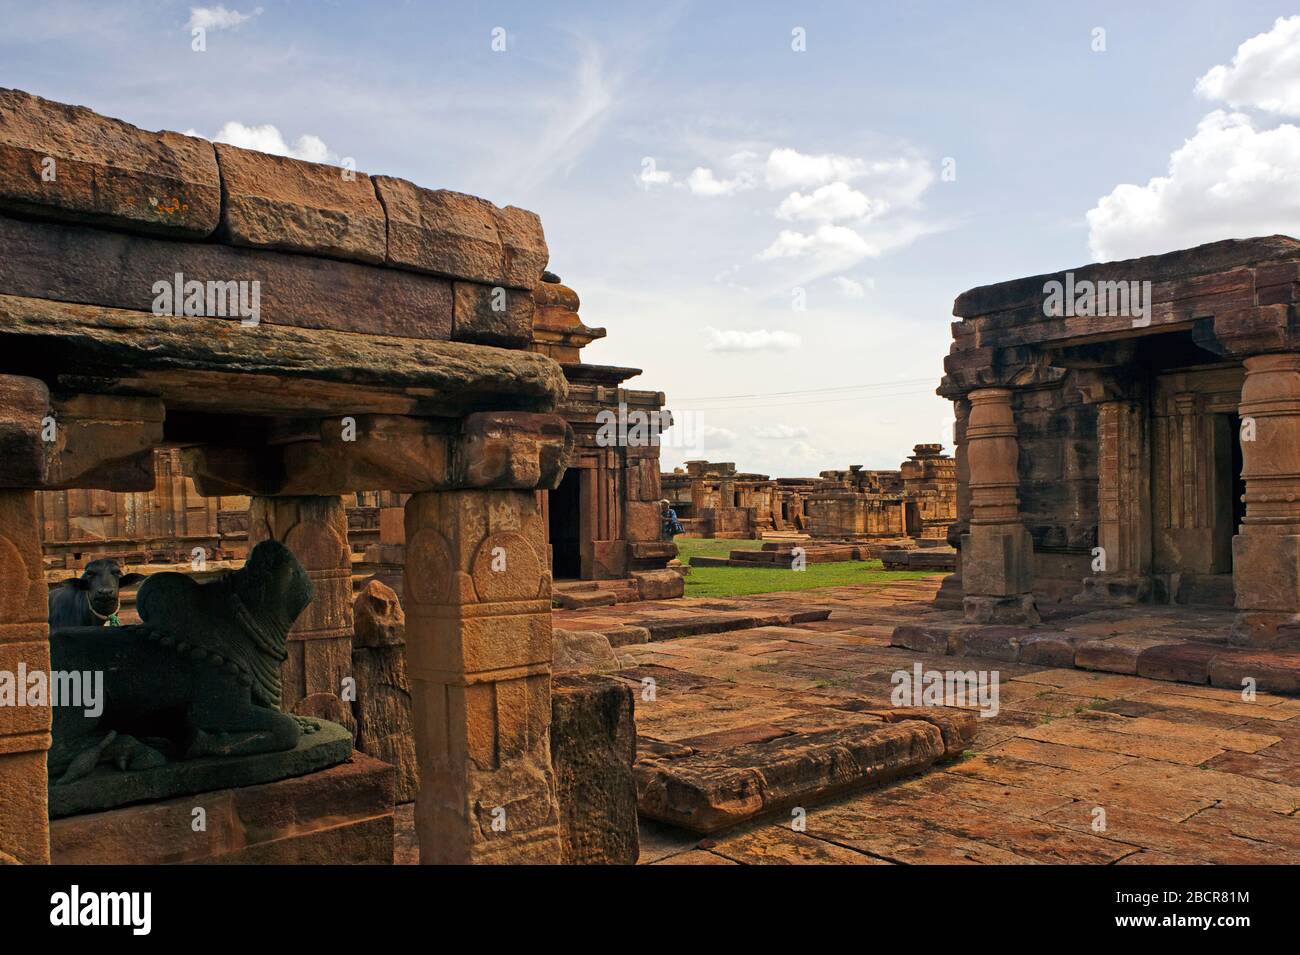 06 Jun 2008 Pattadakal, also called Paṭṭadakallu or Raktapura, is a collection of ten Hindu and Jain temples in north Karnataka, India Stock Photo